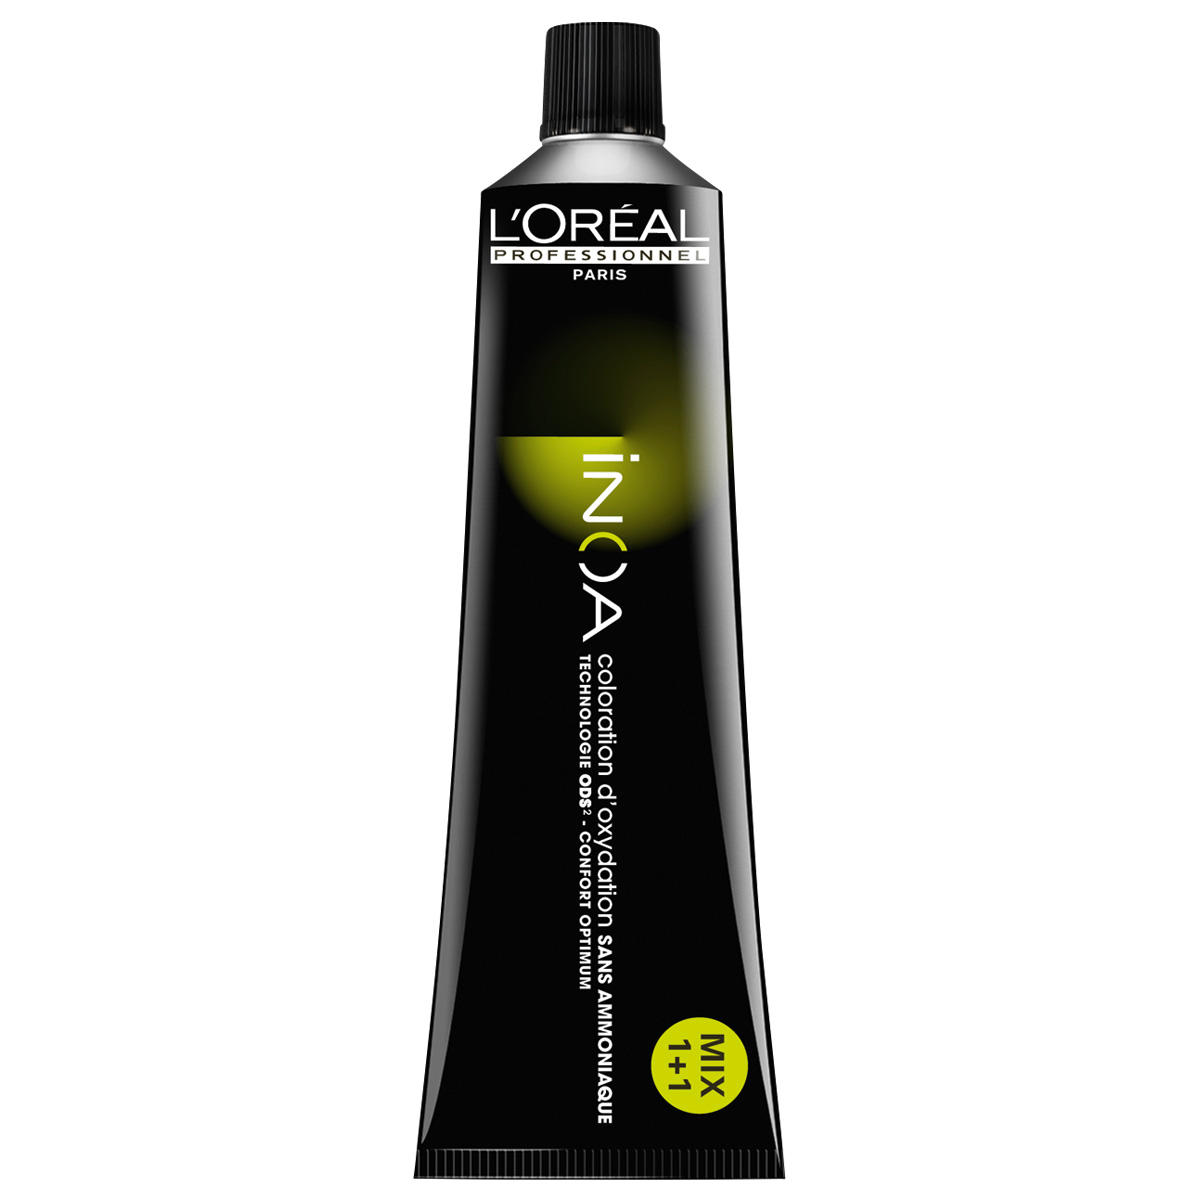 L'Oréal Professionnel Paris Coloration 6,45 Rubio oscuro cobrizo caoba, tubo 60 ml - 1